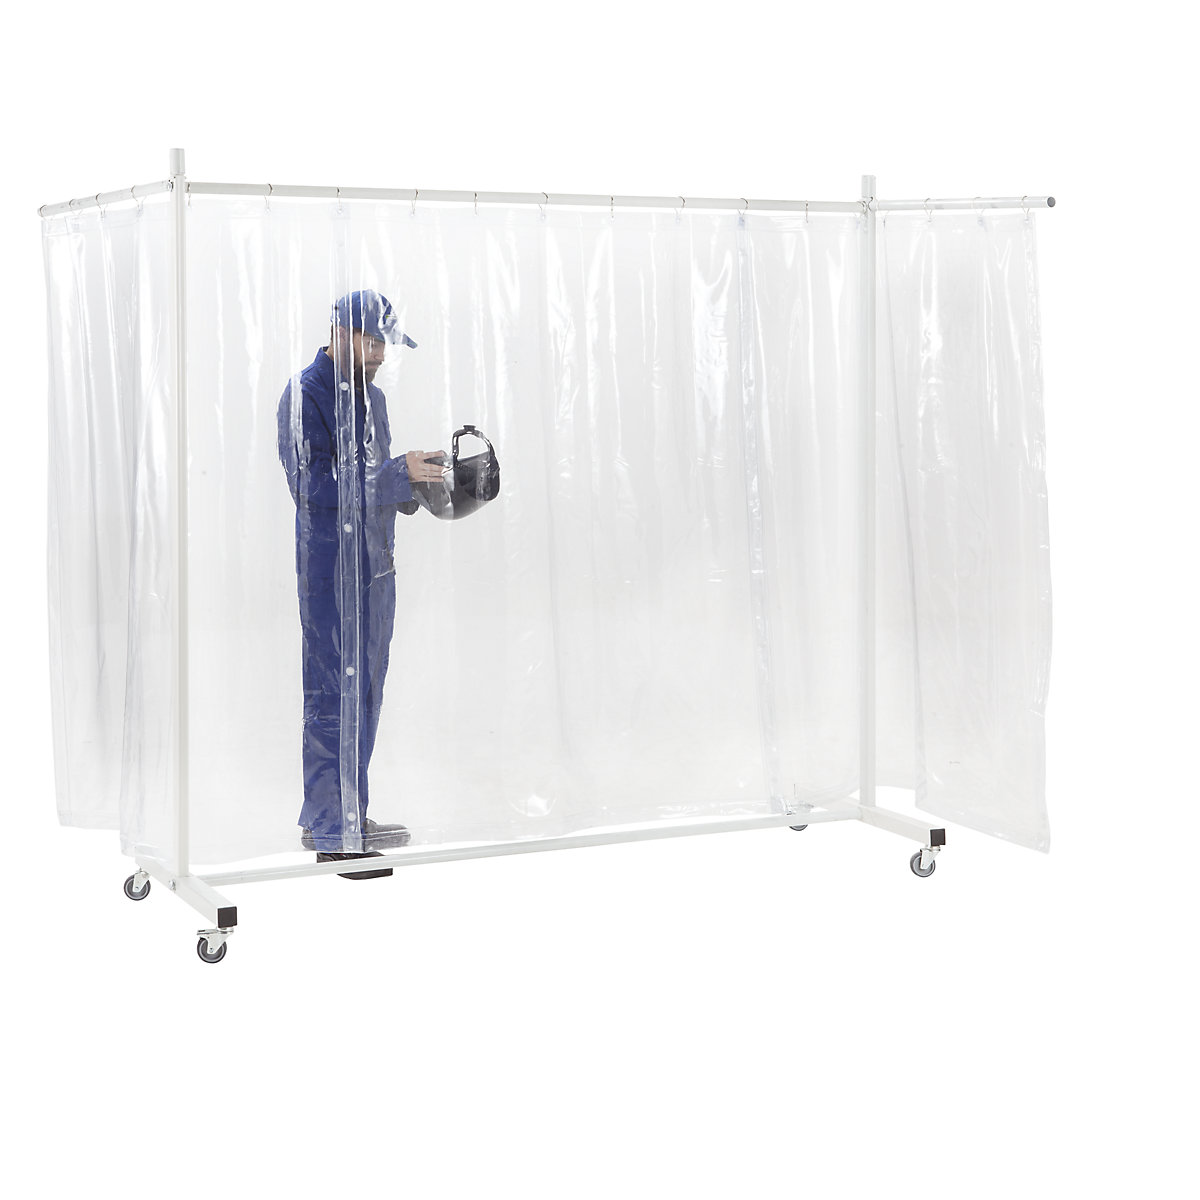 Tabique de protección, móvil, con cortina de lona, transparente, A x H 3700 x 2100 mm, de 3 piezas-2